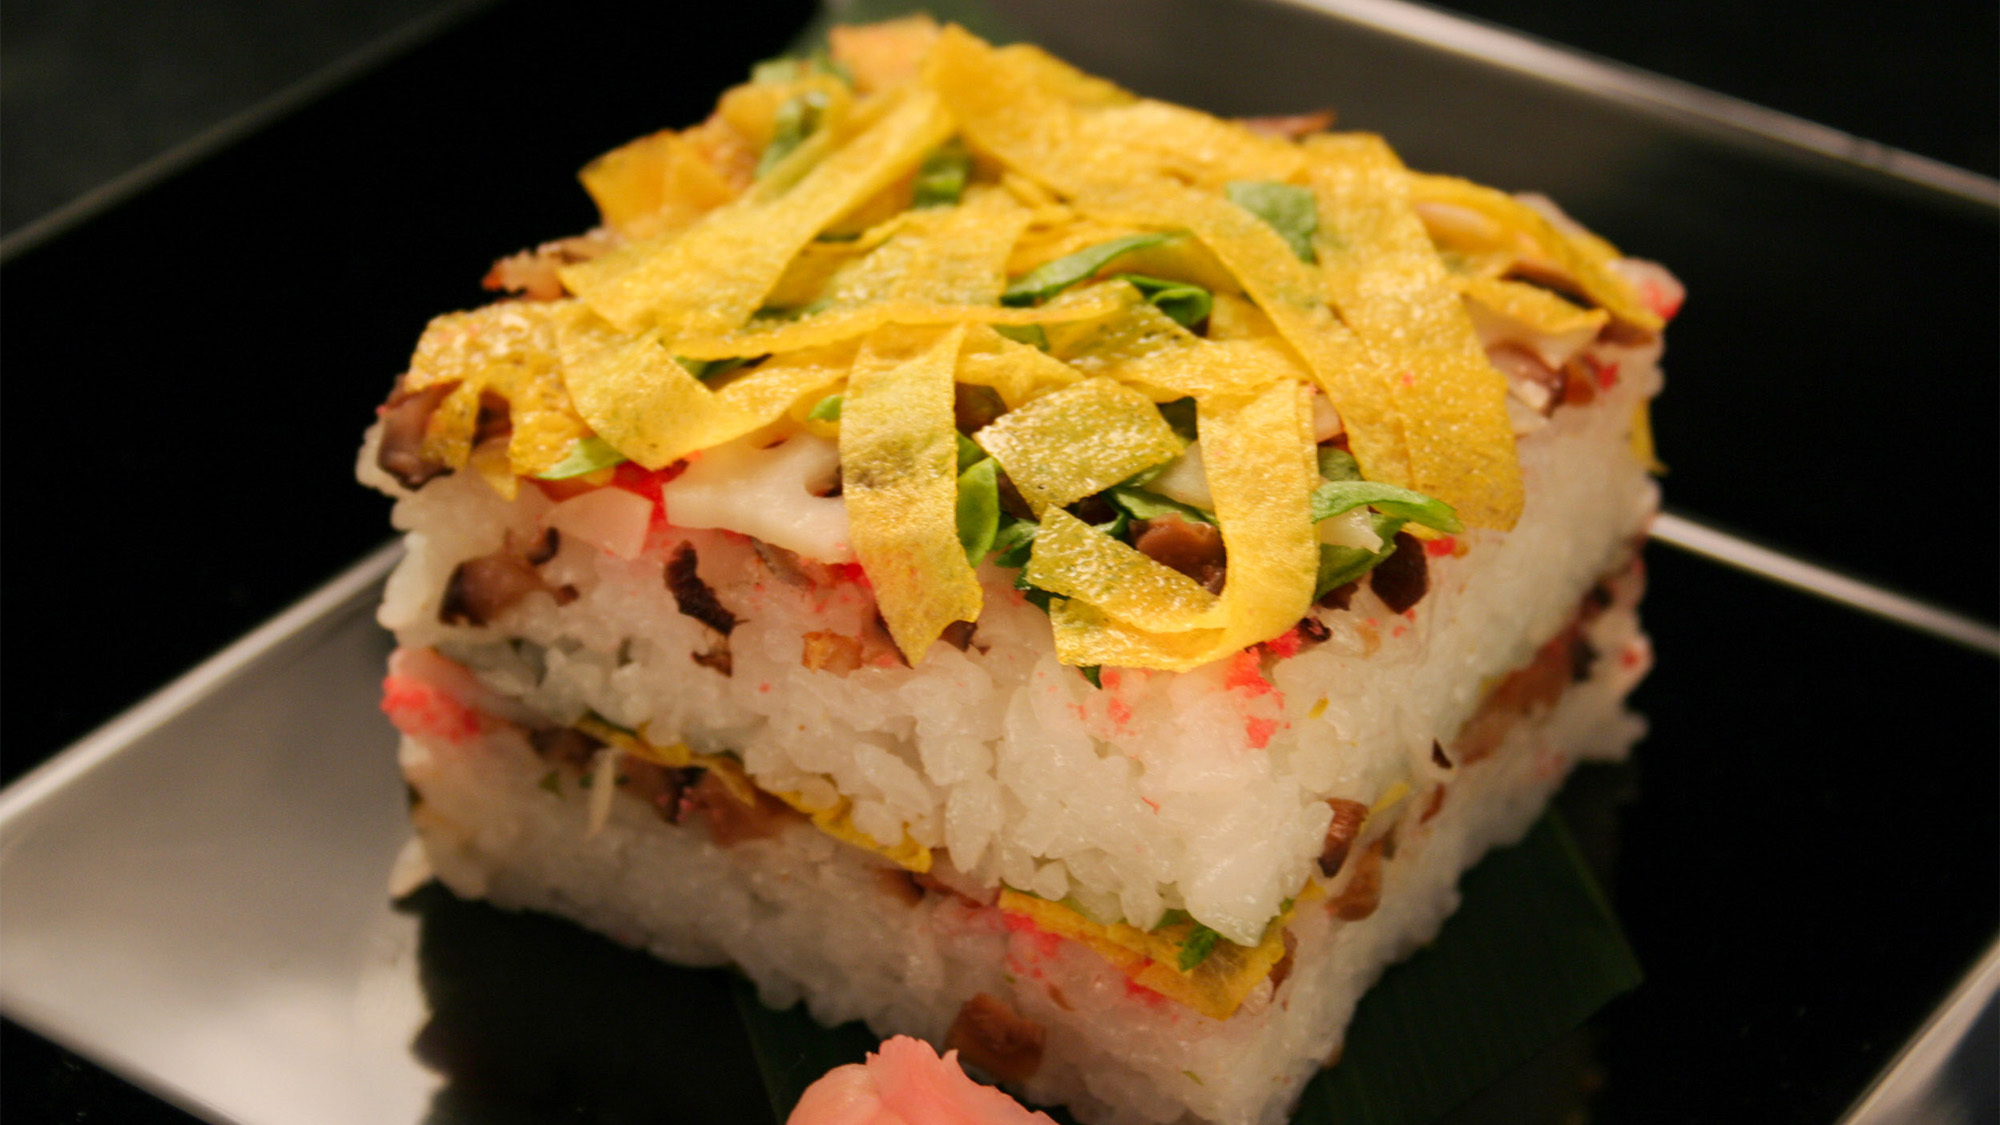 ・岩国寿司色鮮やかな見た目と、風味豊かな食感に心が躍ります